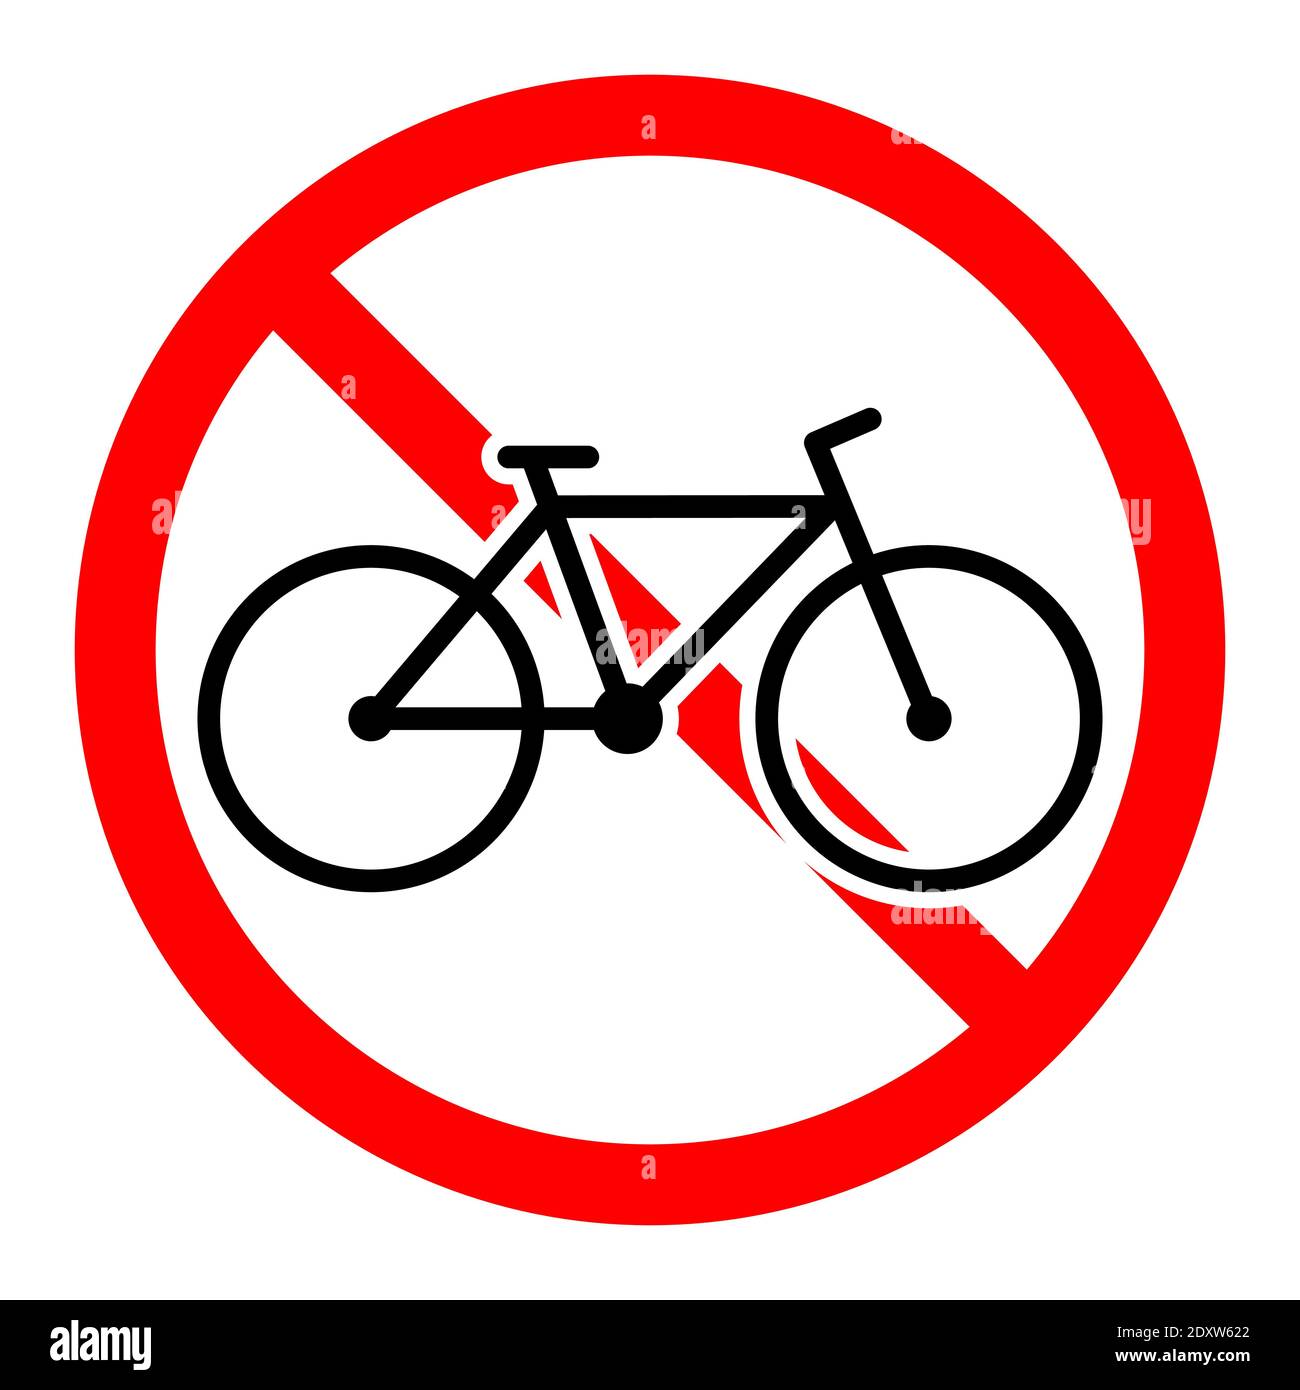 Fahrrad Verbotszeichen Stock-Vektorgrafiken kaufen - Alamy